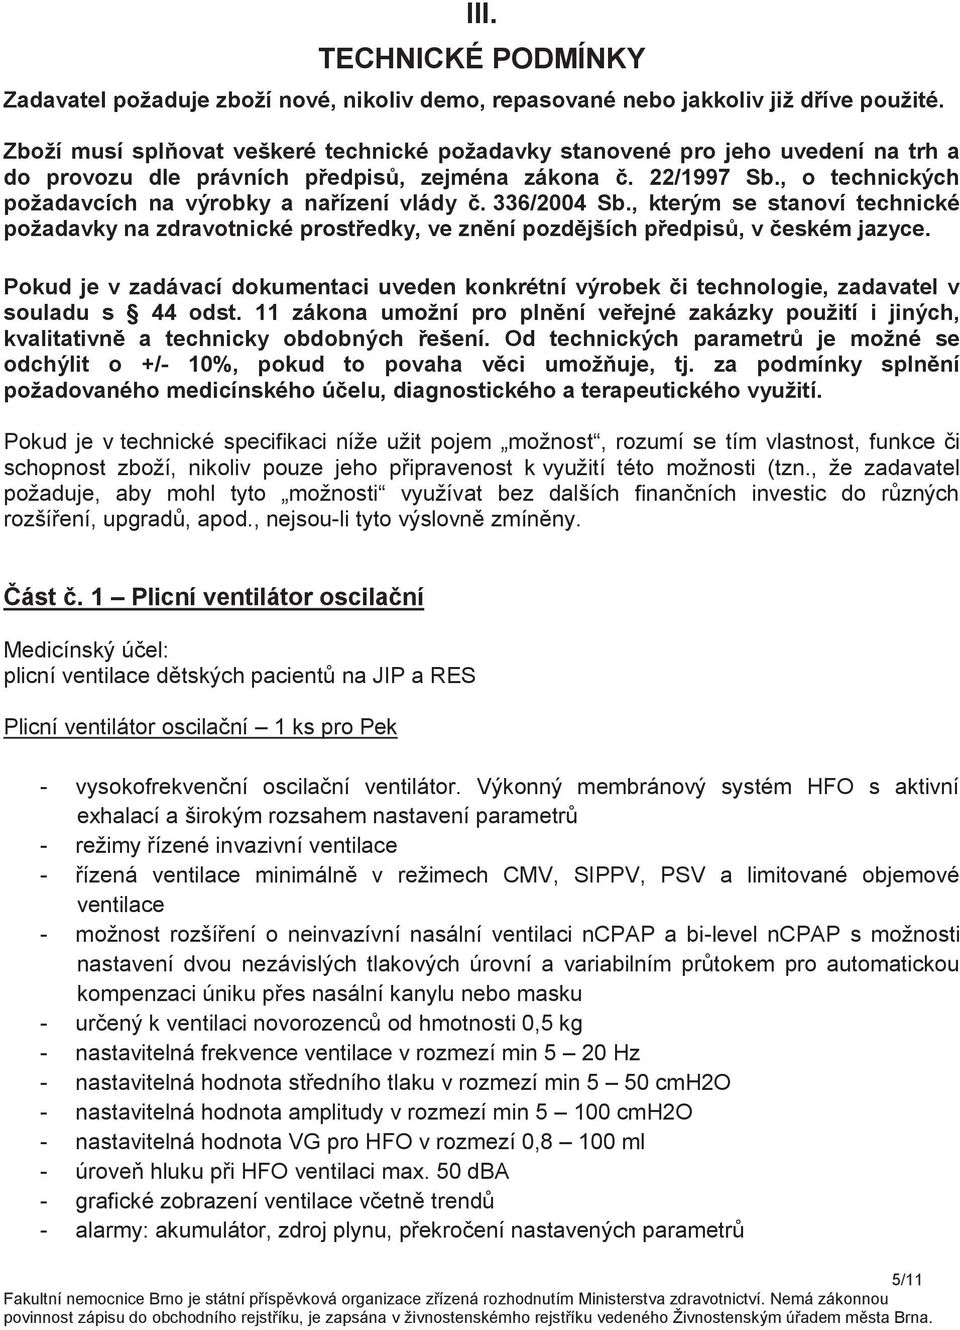 , o technických požadavcích na výrobky a nařízení vlády č. 336/2004 Sb., kterým se stanoví technické požadavky na zdravotnické prostředky, ve znění pozdějších předpisů, v českém jazyce.